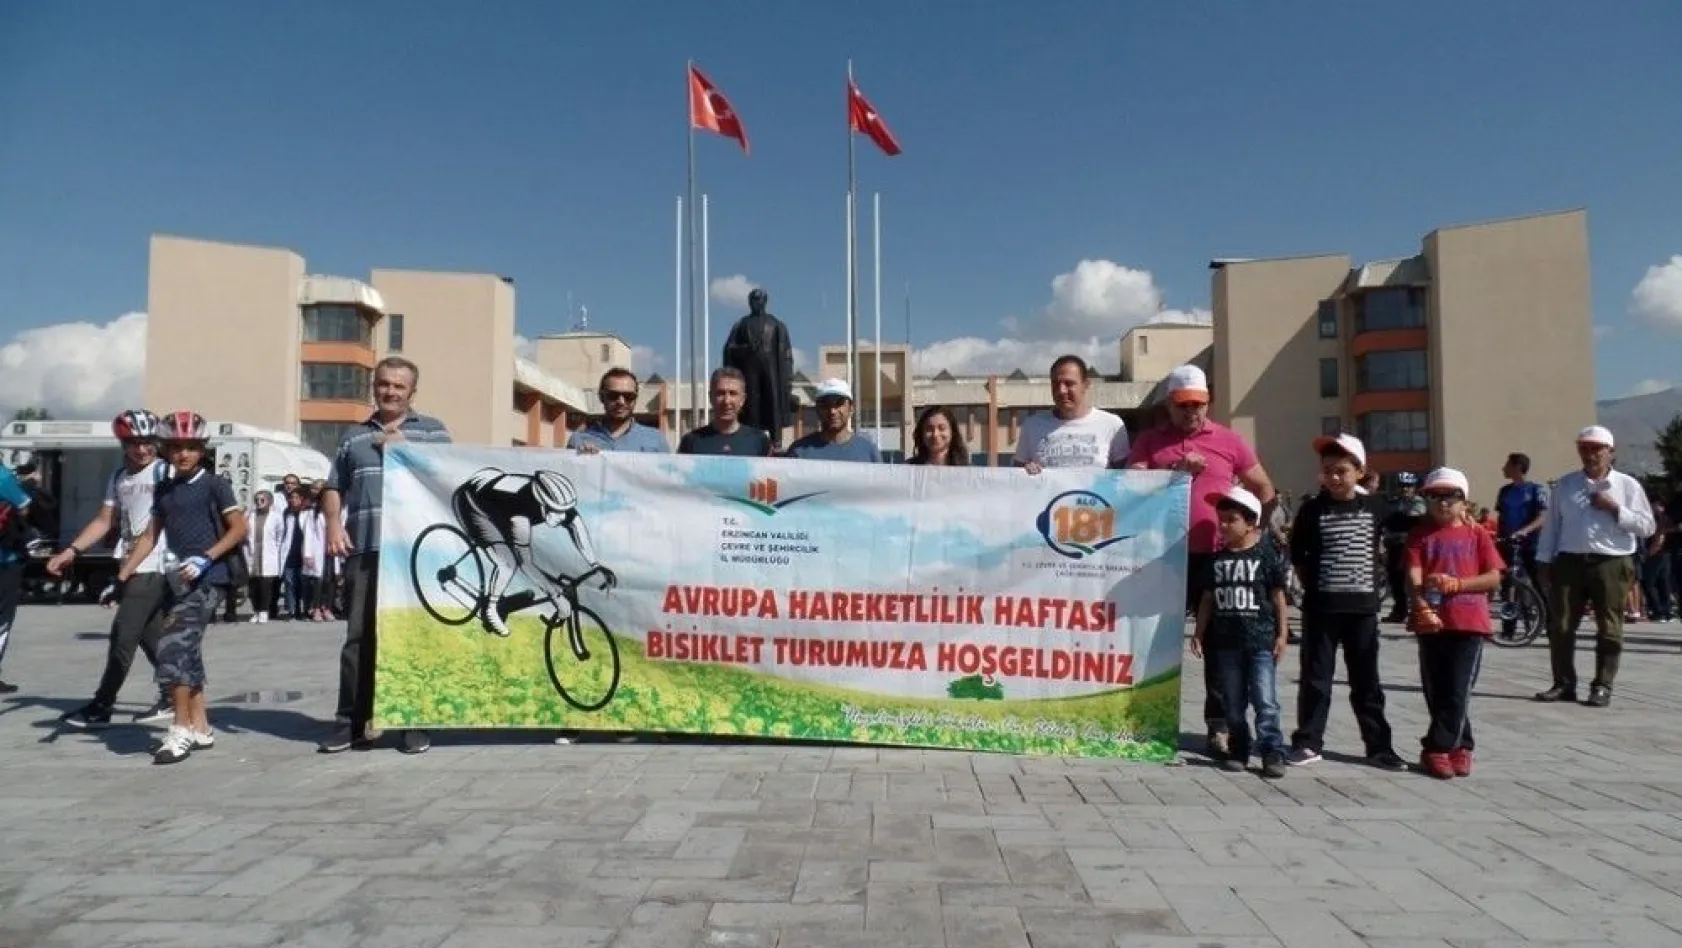 Erzincan'da Avrupa Hareketlilik Haftası kutlandı
